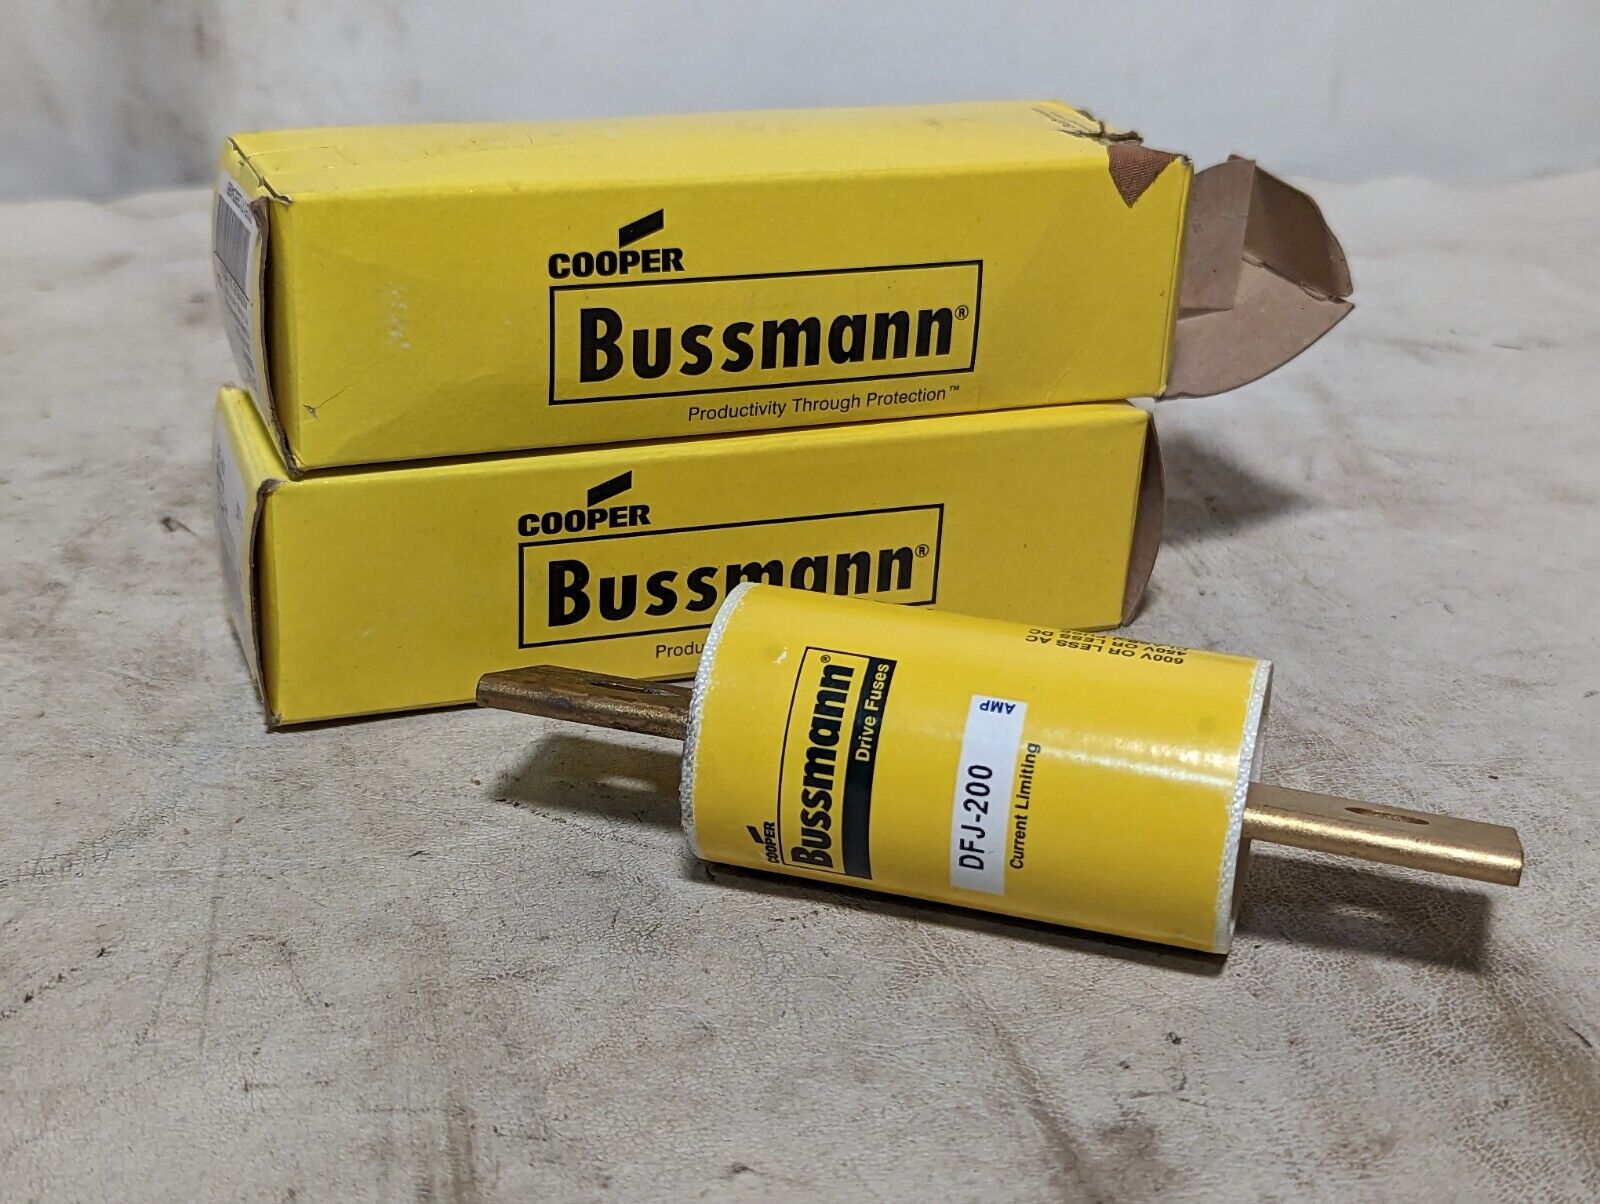 Bussmann DFJ-200 drive fuse, 200A, 600V or less AC, 450V or less DC, class J